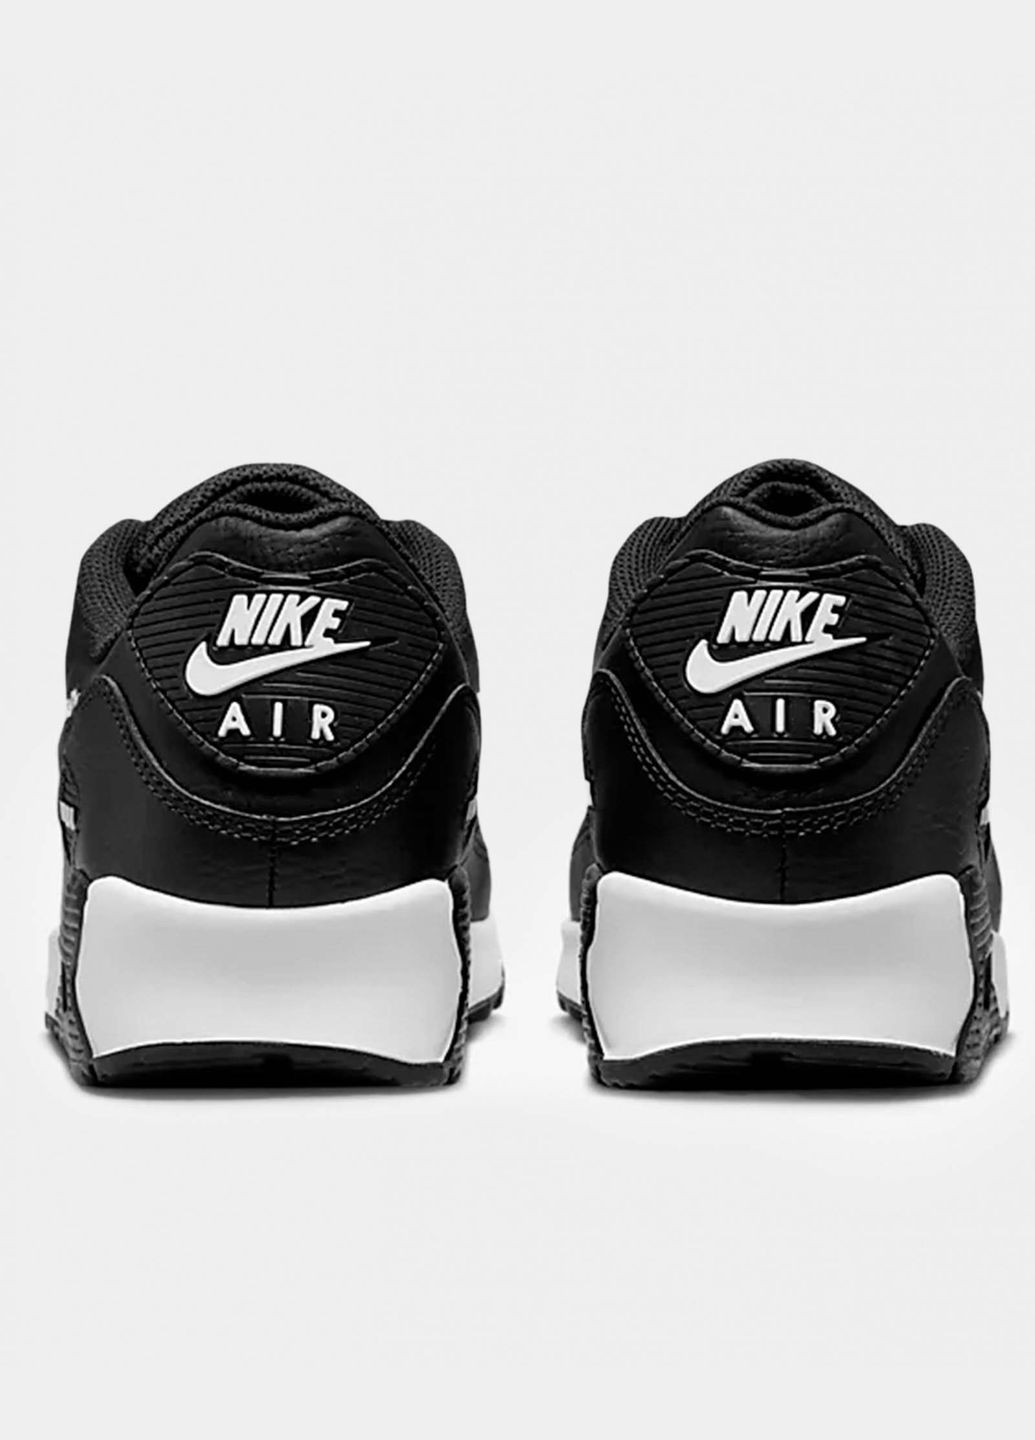 Белые всесезонные мужские кроссовки оригинал кроссовки мужские air max 90 fd0657-001 весна-осень текстиль кожа черные Nike